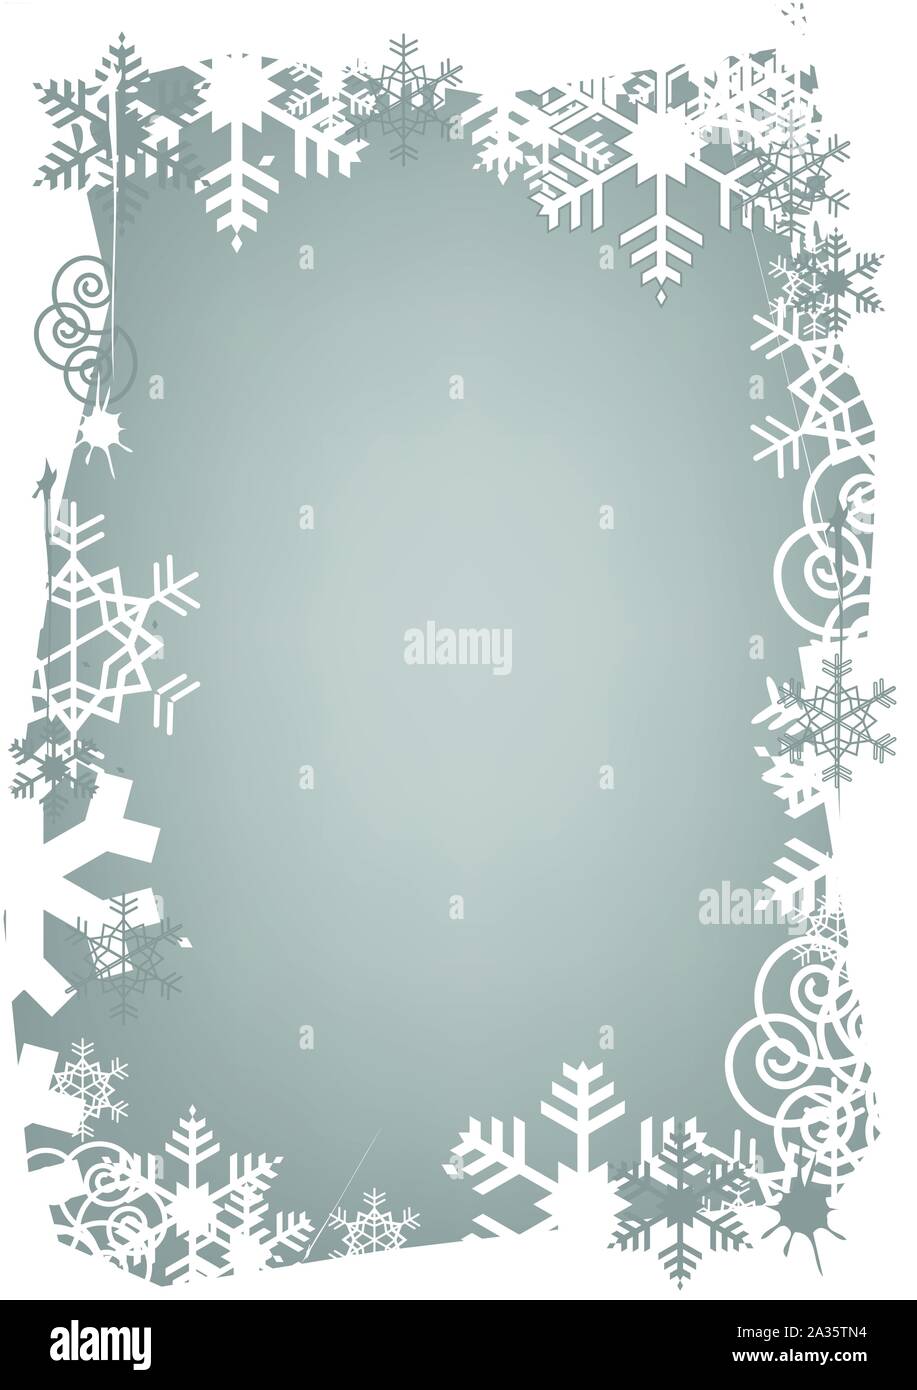 Рамка из снежинок на прозрачном фоне